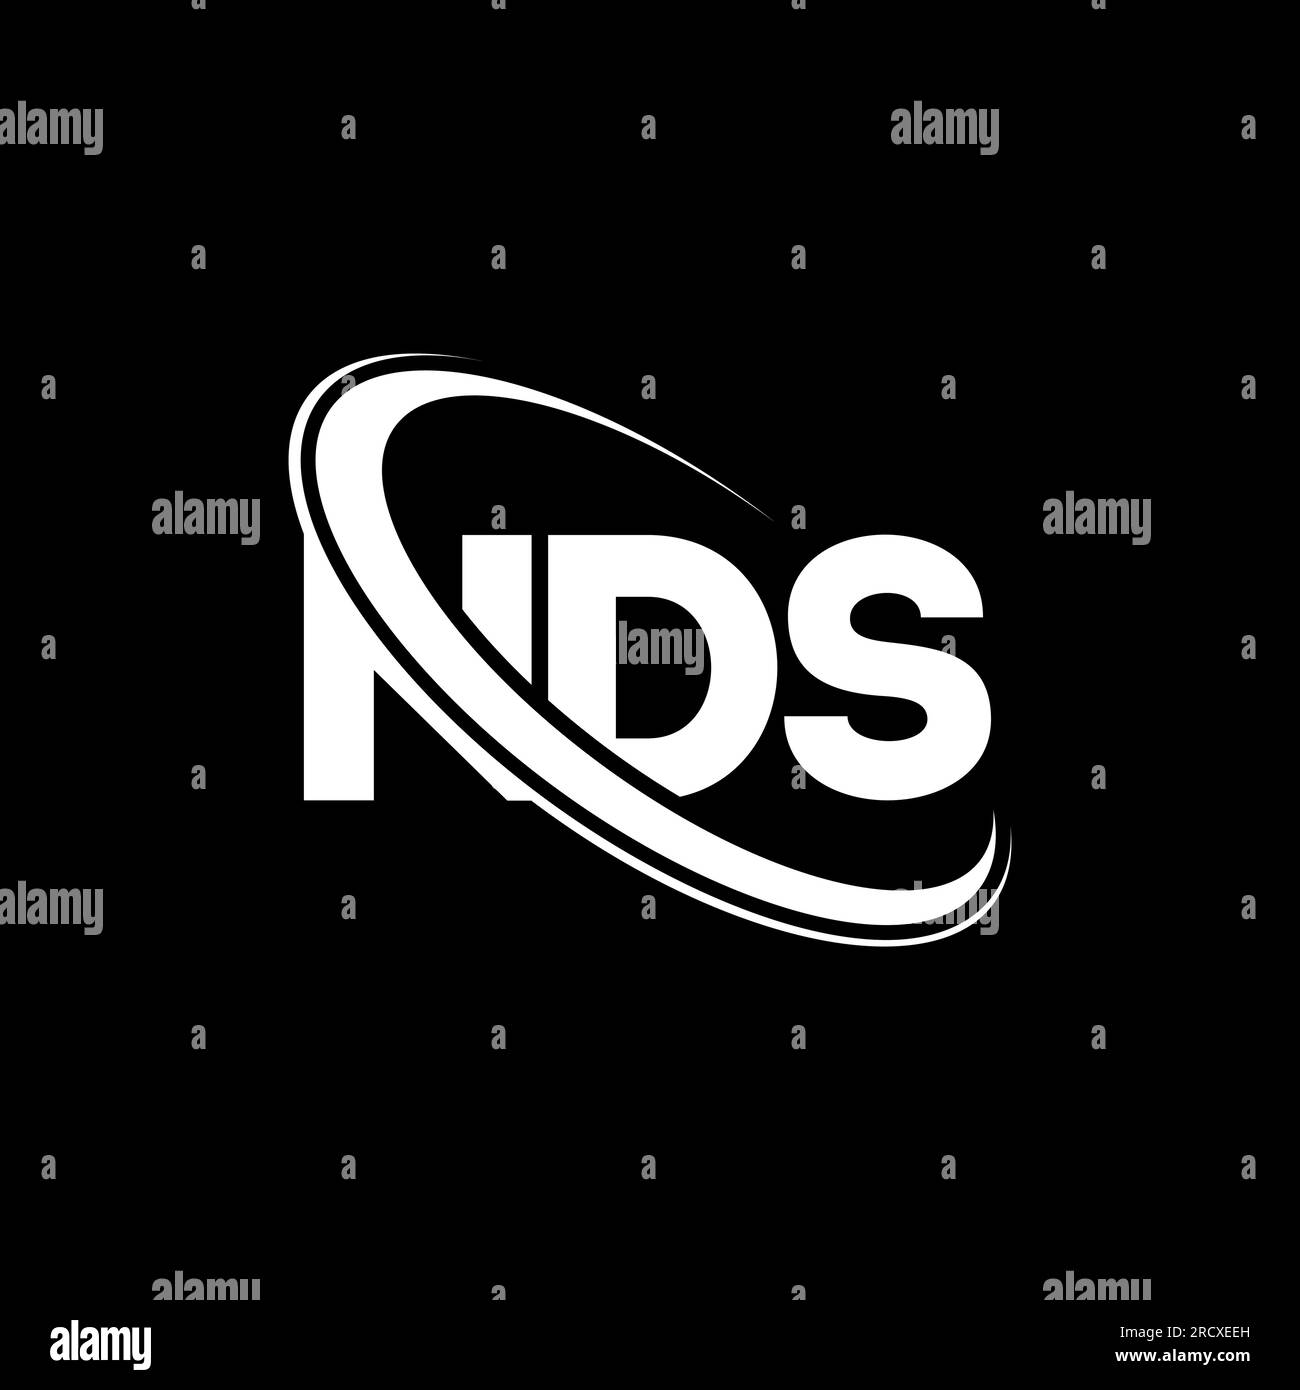 NDS-Logo. NDS-Brief. Logo mit NDS-Buchstaben. Initialen NDS-Logo, verbunden mit einem Kreis und einem Monogramm-Logo in Großbuchstaben. NDS-Typografie für Technologie, Unternehmen Stock Vektor